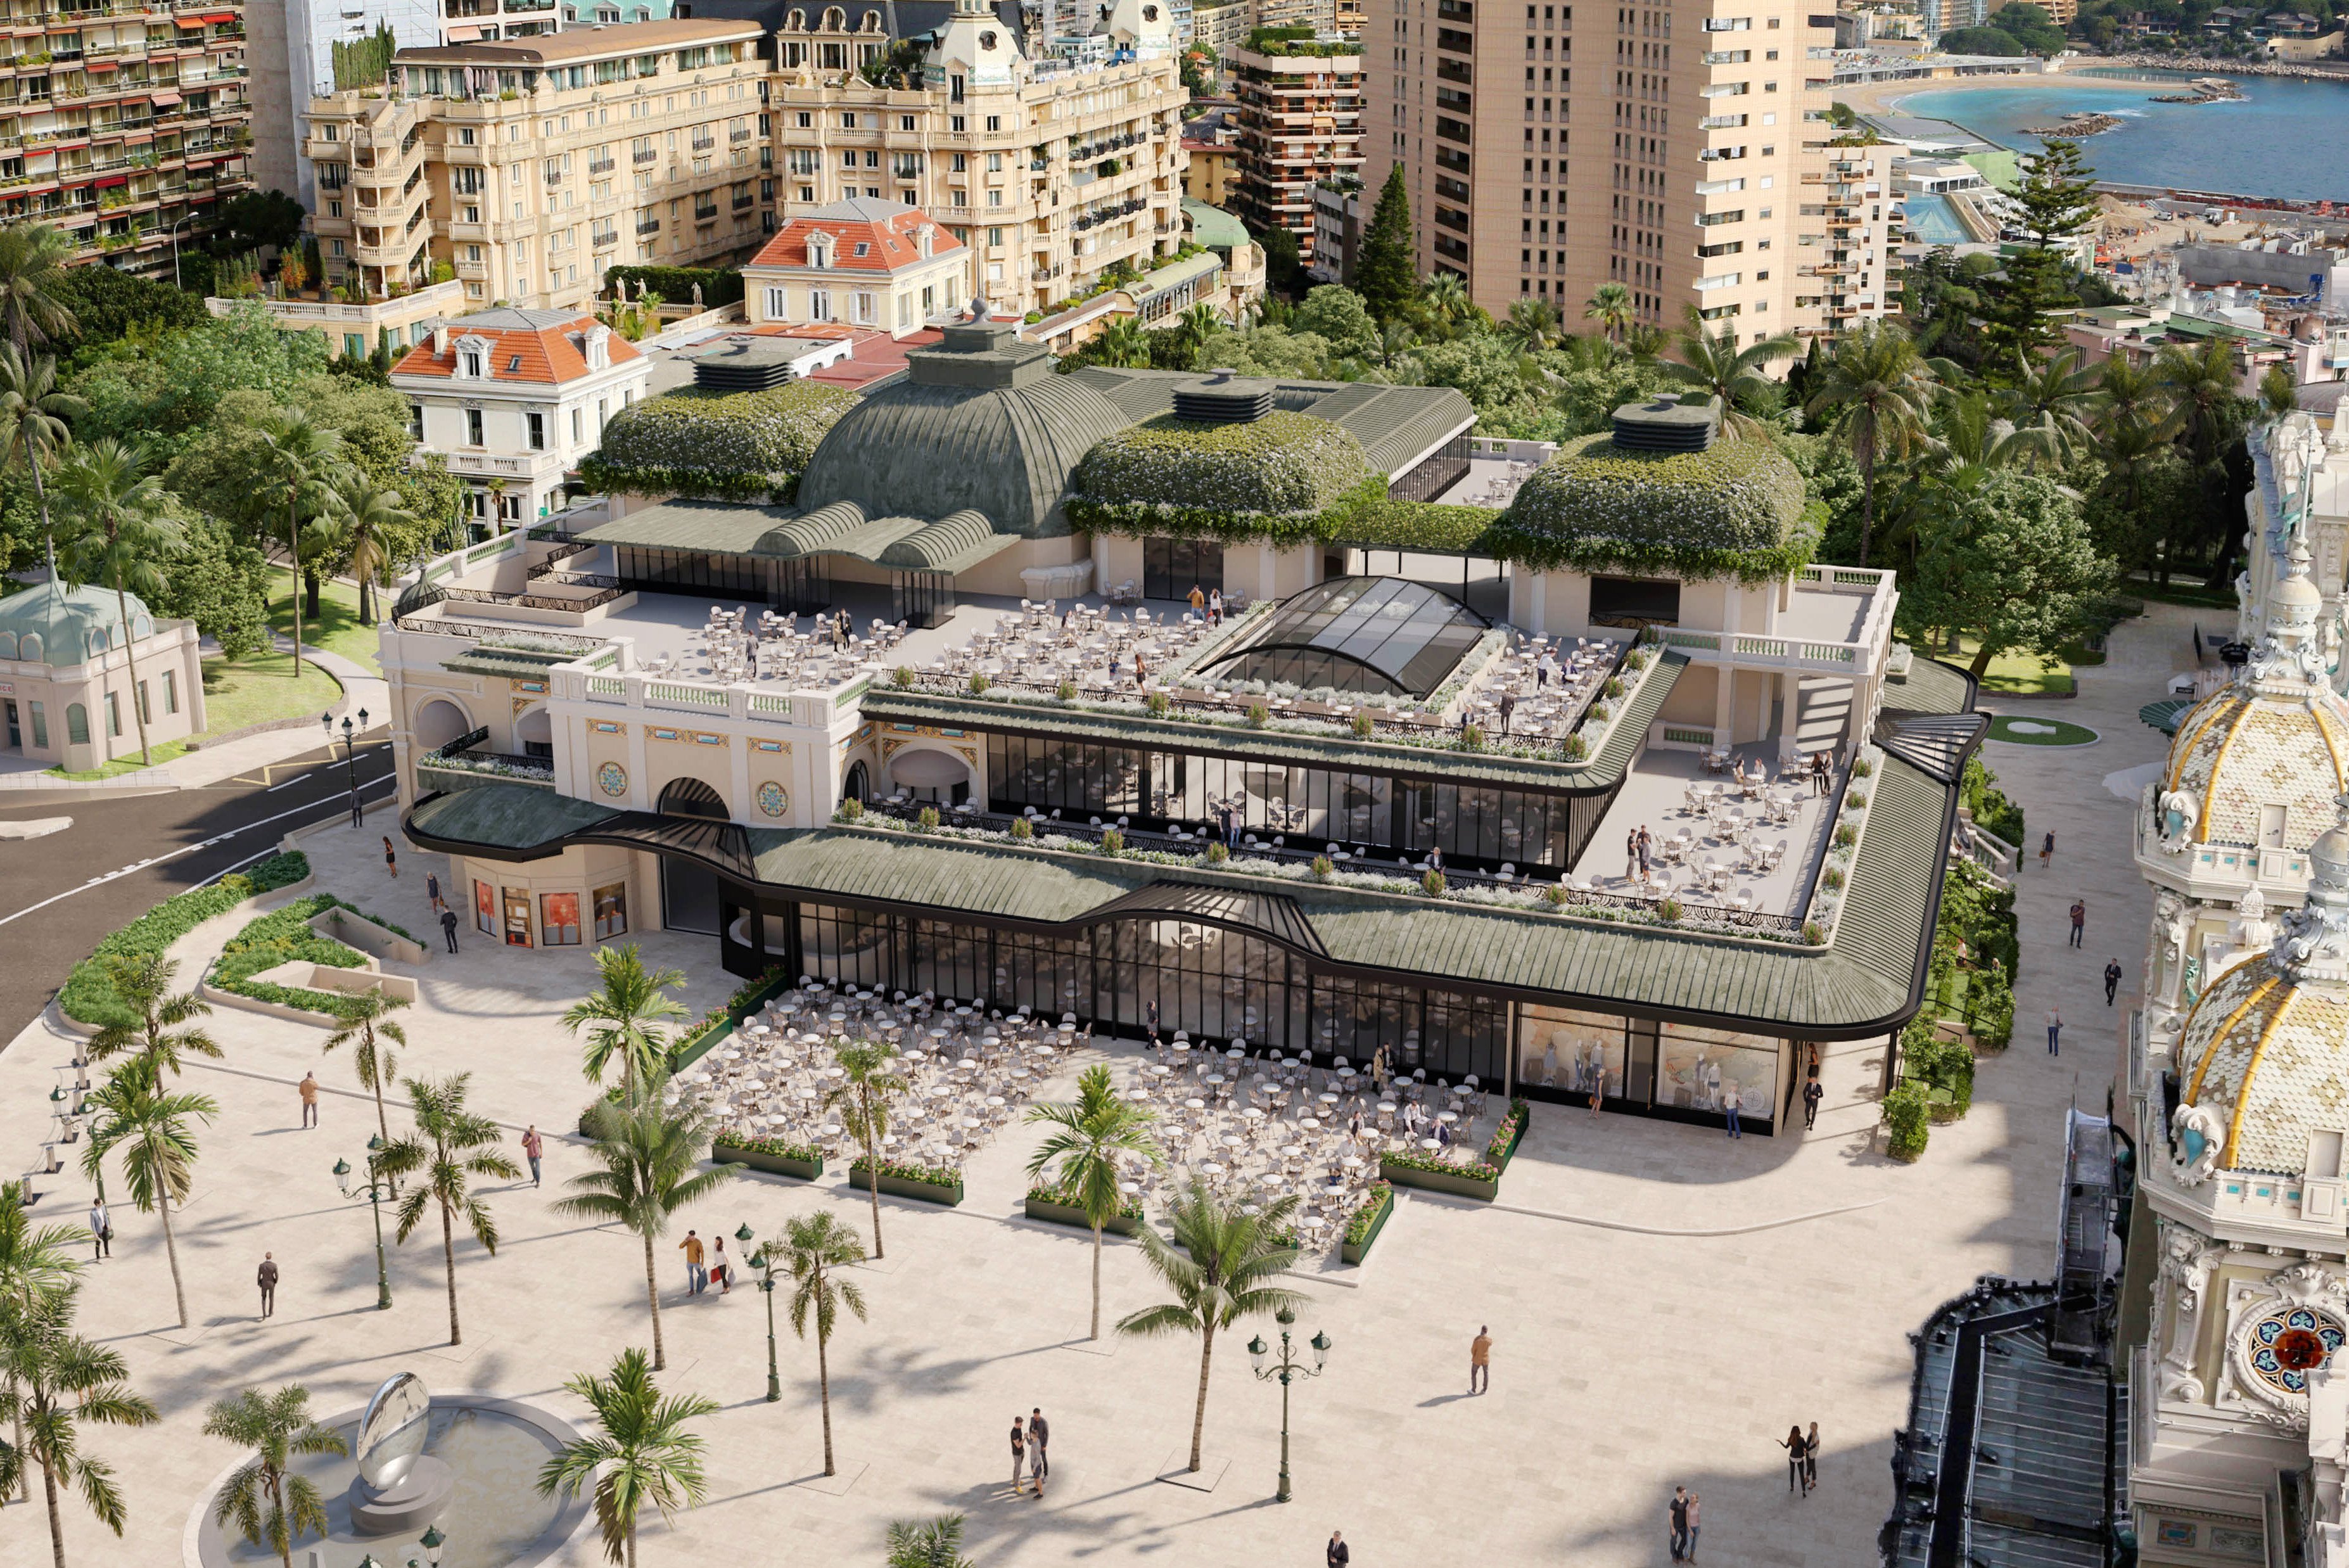 »Café de Paris«, Monte-Carlo, Monaco Seit 1868 gilt das Kaffeehaus als Wahrzeichen der Stadt. Nach 155 Jahren Savoir-vivre wird das Café nun renoviert und erweitert. Der Relaunch verspricht eine zukunftsweisende Architektur mit Riesen-Dachterrasse und Glaskonstruktionen, wobei die Struktur des Gebäudes und der Geist der Belle Époque erhalten bleiben sollen.